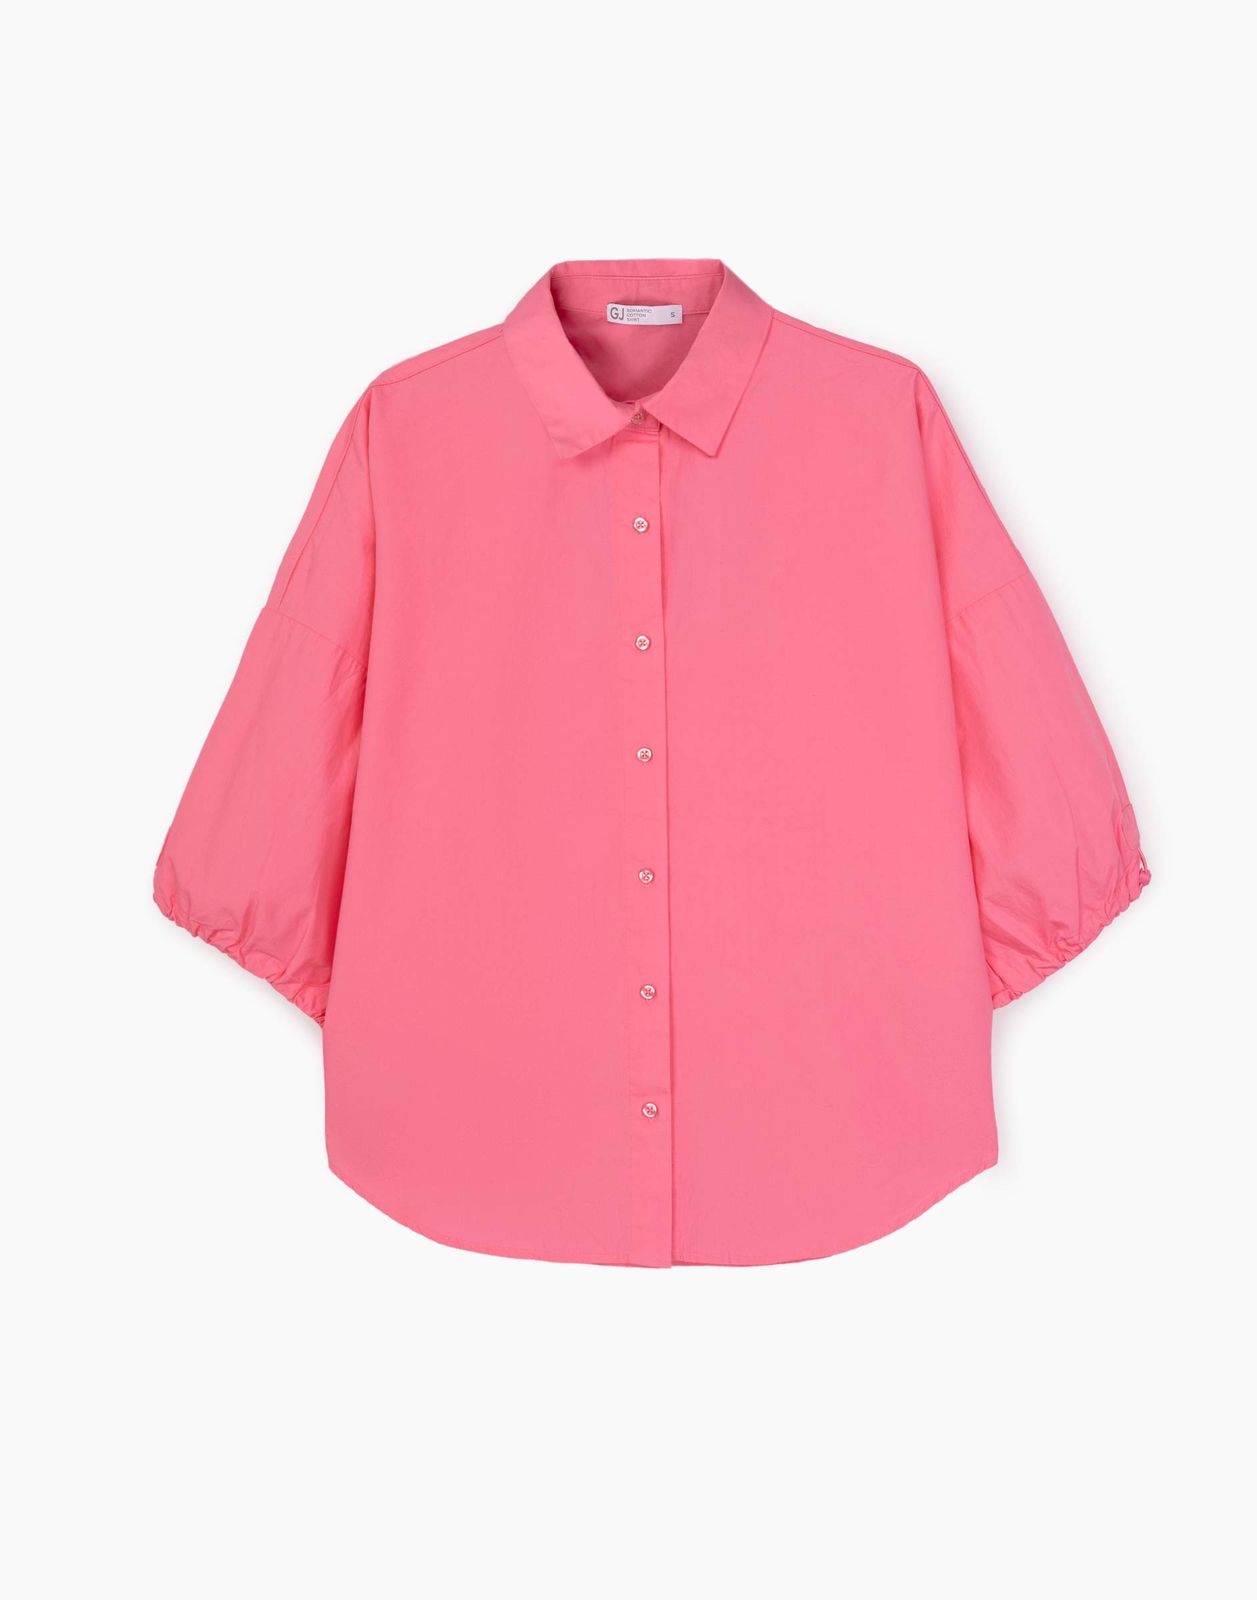 Рубашка женская Gloria Jeans GWT003887 розовый S/170